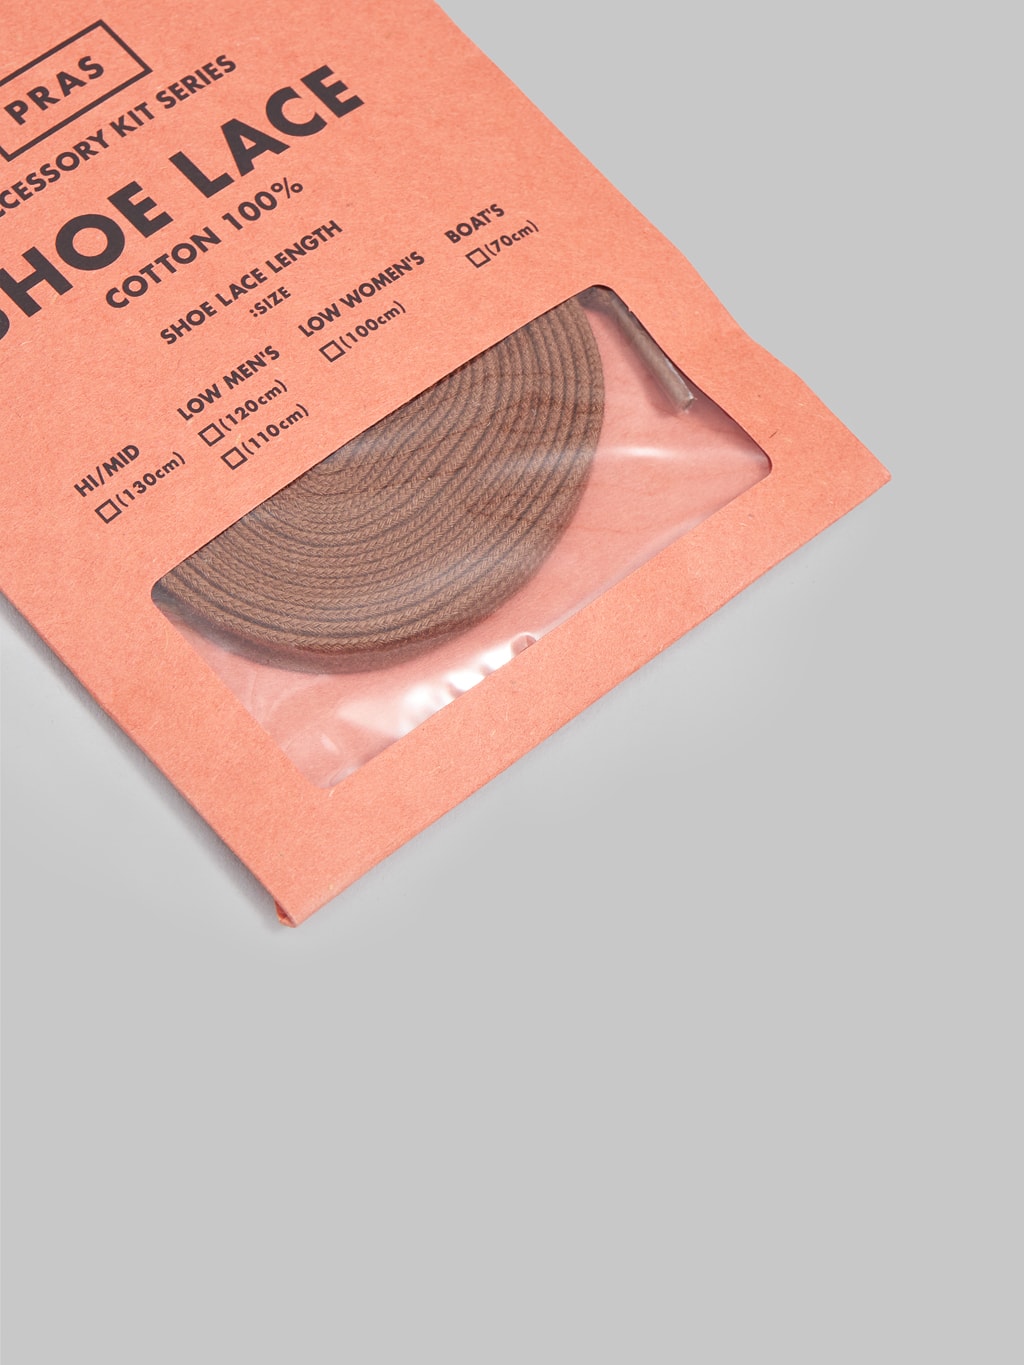 pras shoe lace brown packaging detail